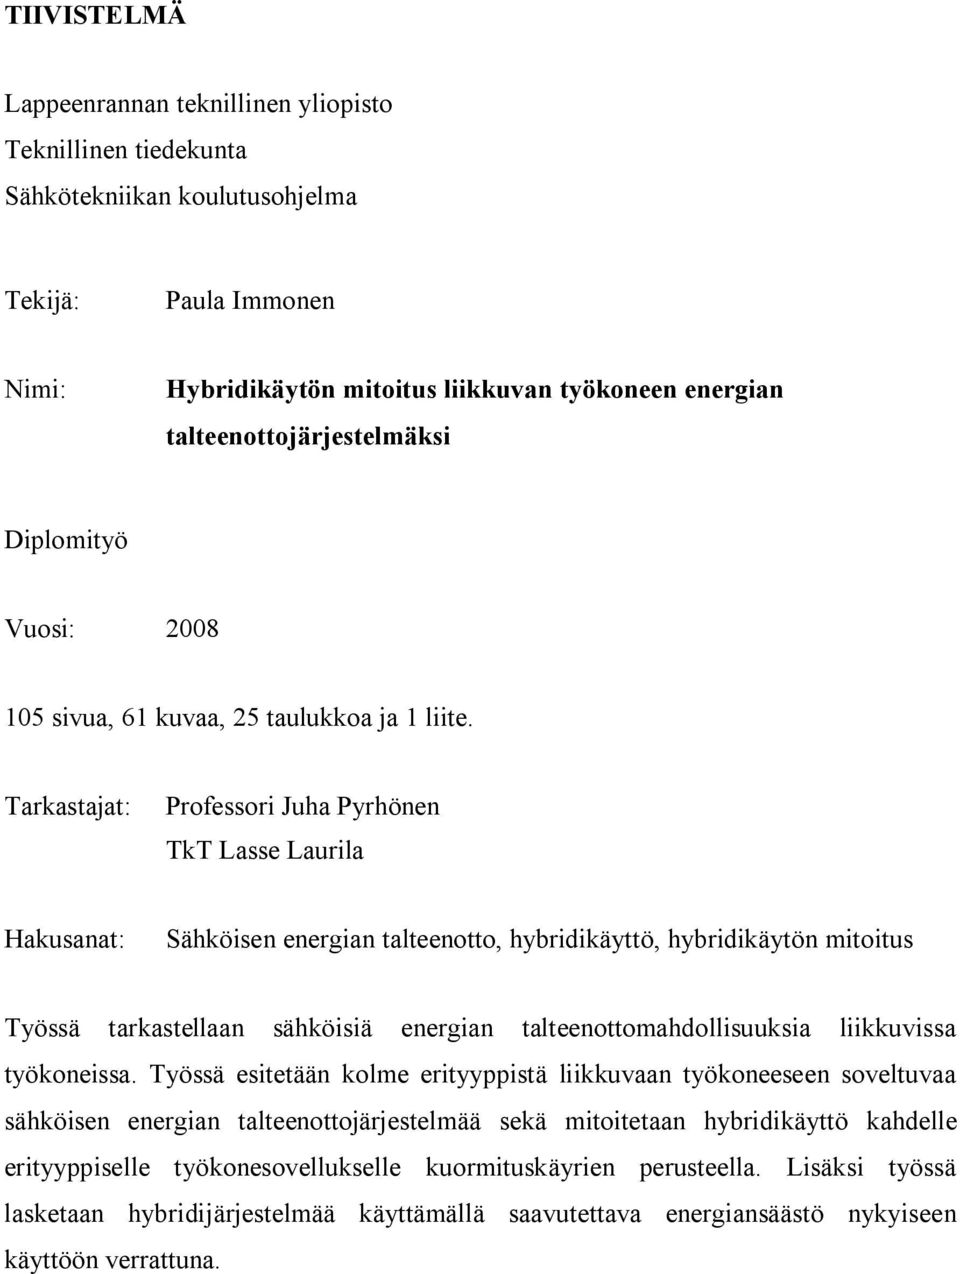 Tarkastajat: Professori Juha Pyrhönen TkT Lasse Laurila Hakusanat: Sähköisen energian talteenotto, hybridikäyttö, hybridikäytön mitoitus Työssä tarkastellaan sähköisiä energian